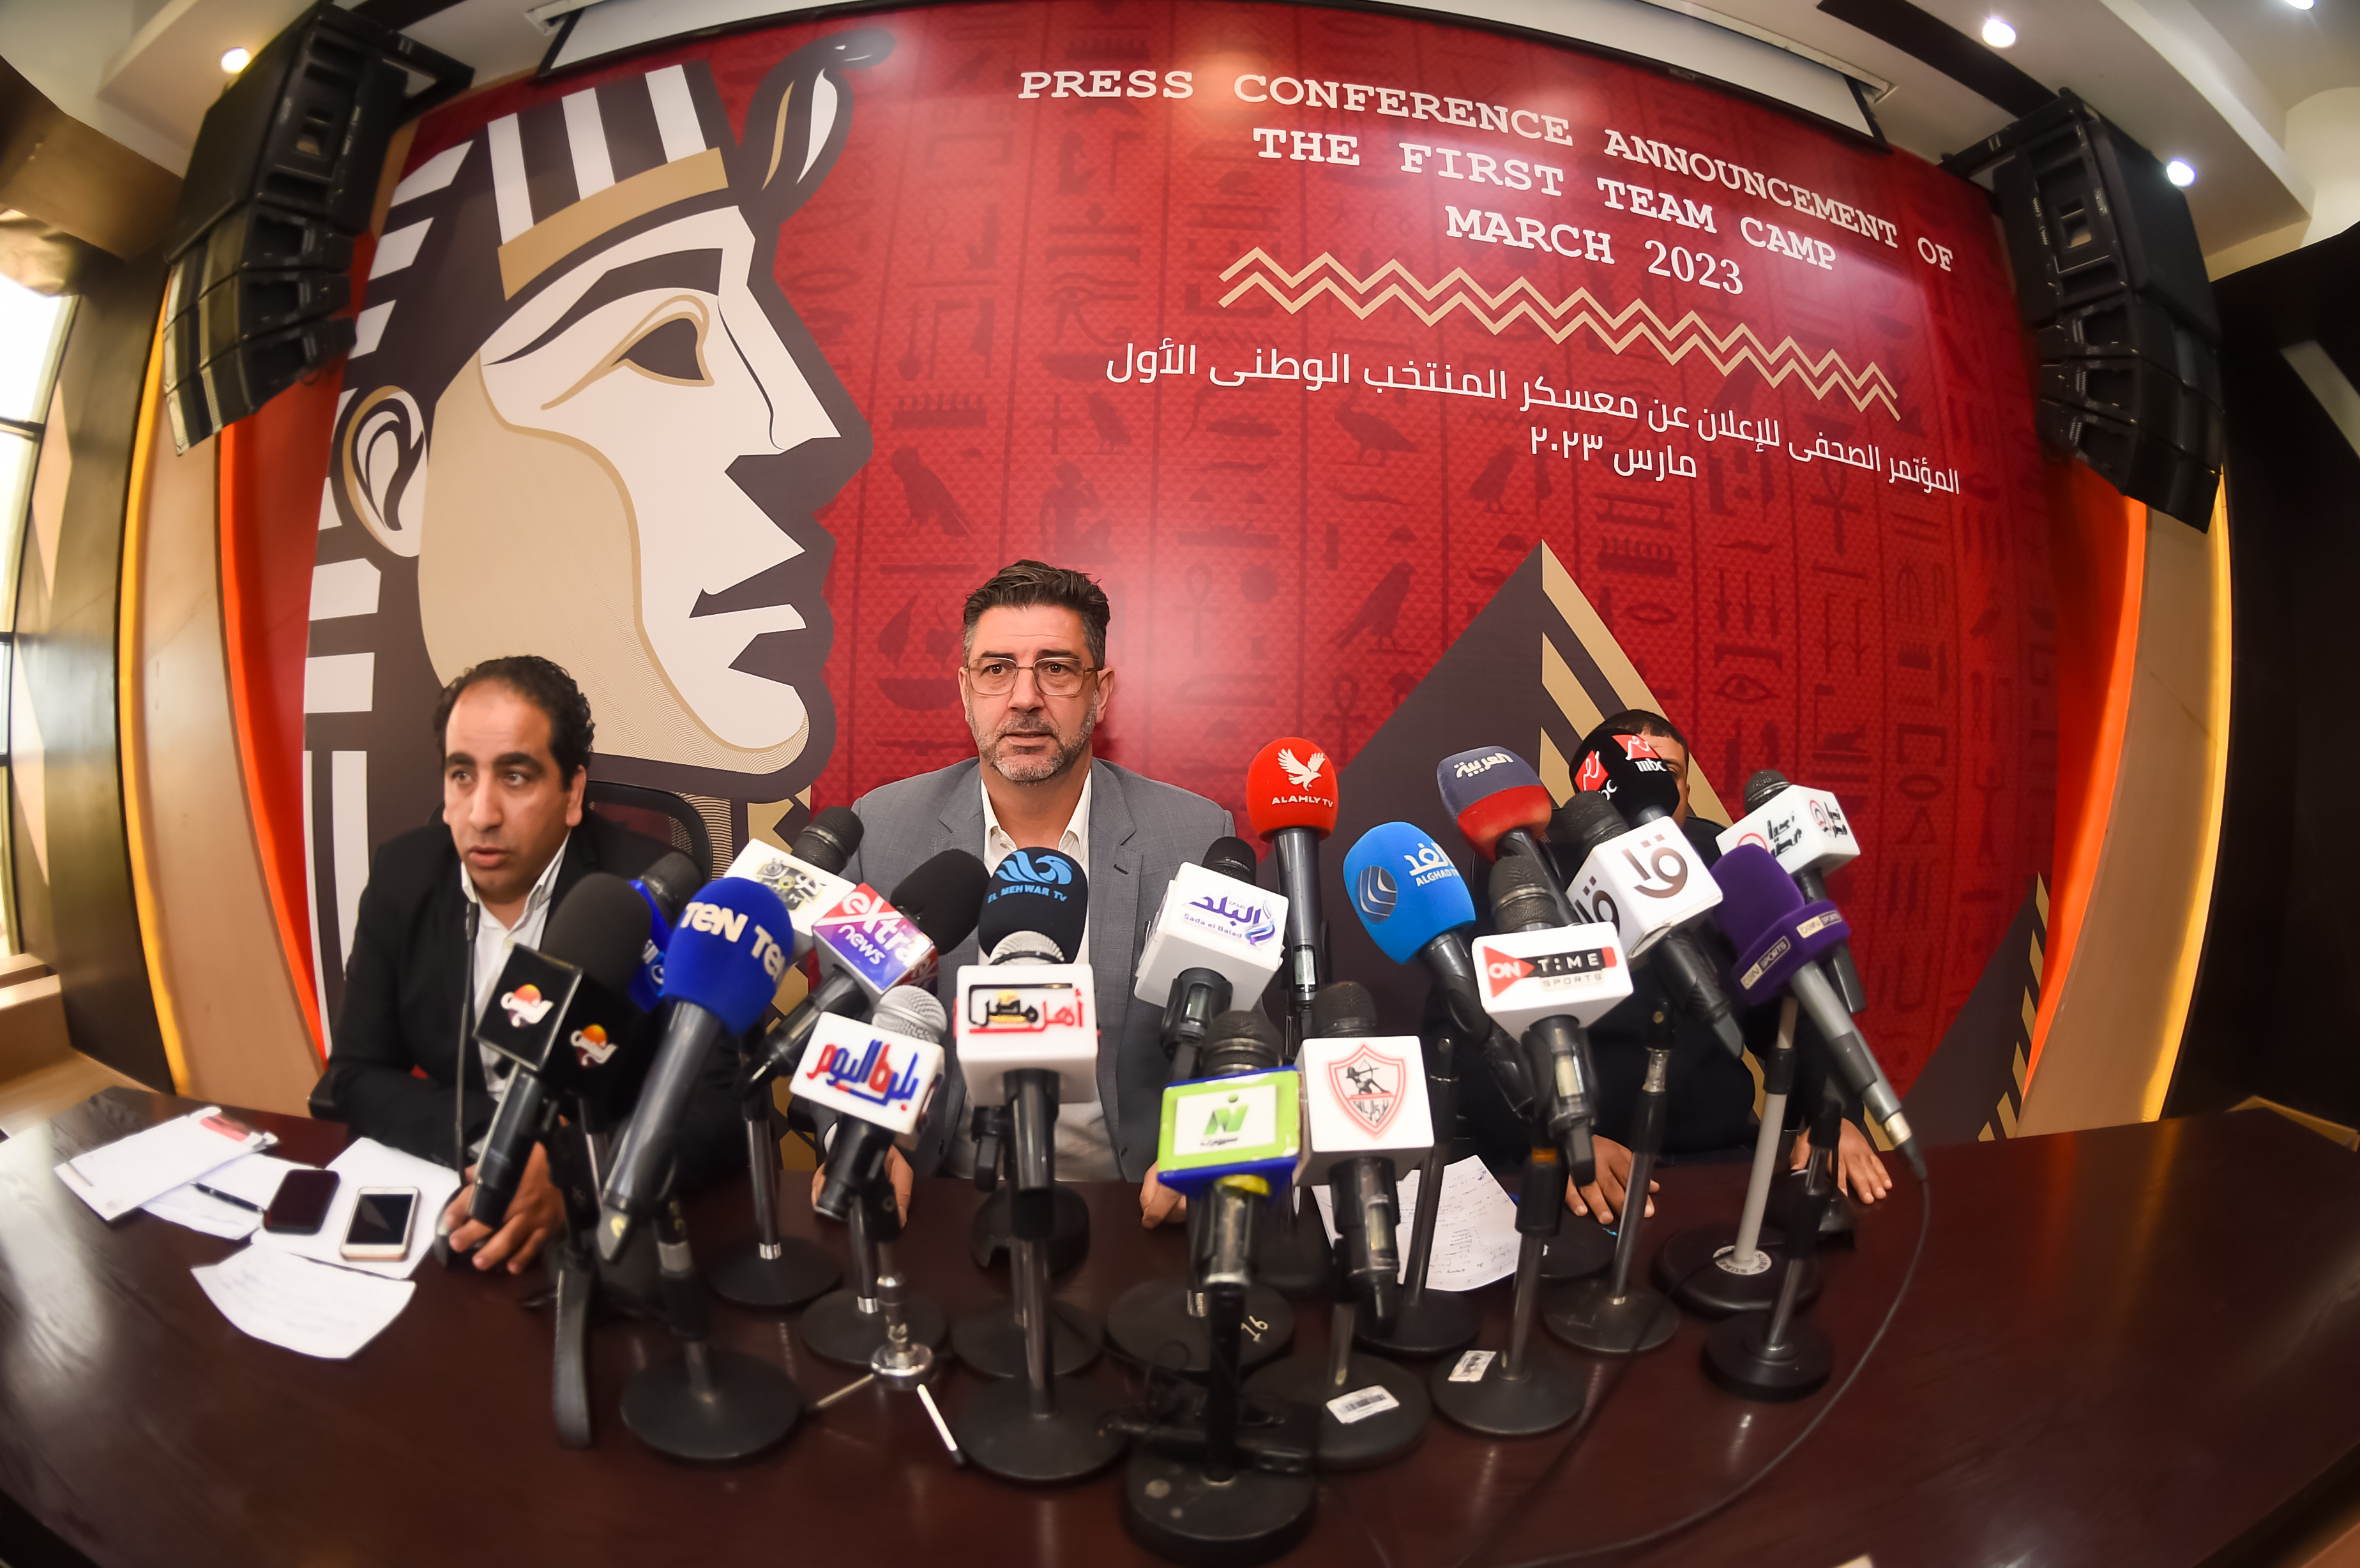 مؤتمر صحفي إلى البرتغالي روي فيتوريا المدير الفني لمنتخب مصر لإعلان تفاصيل معسكر شهر مارس